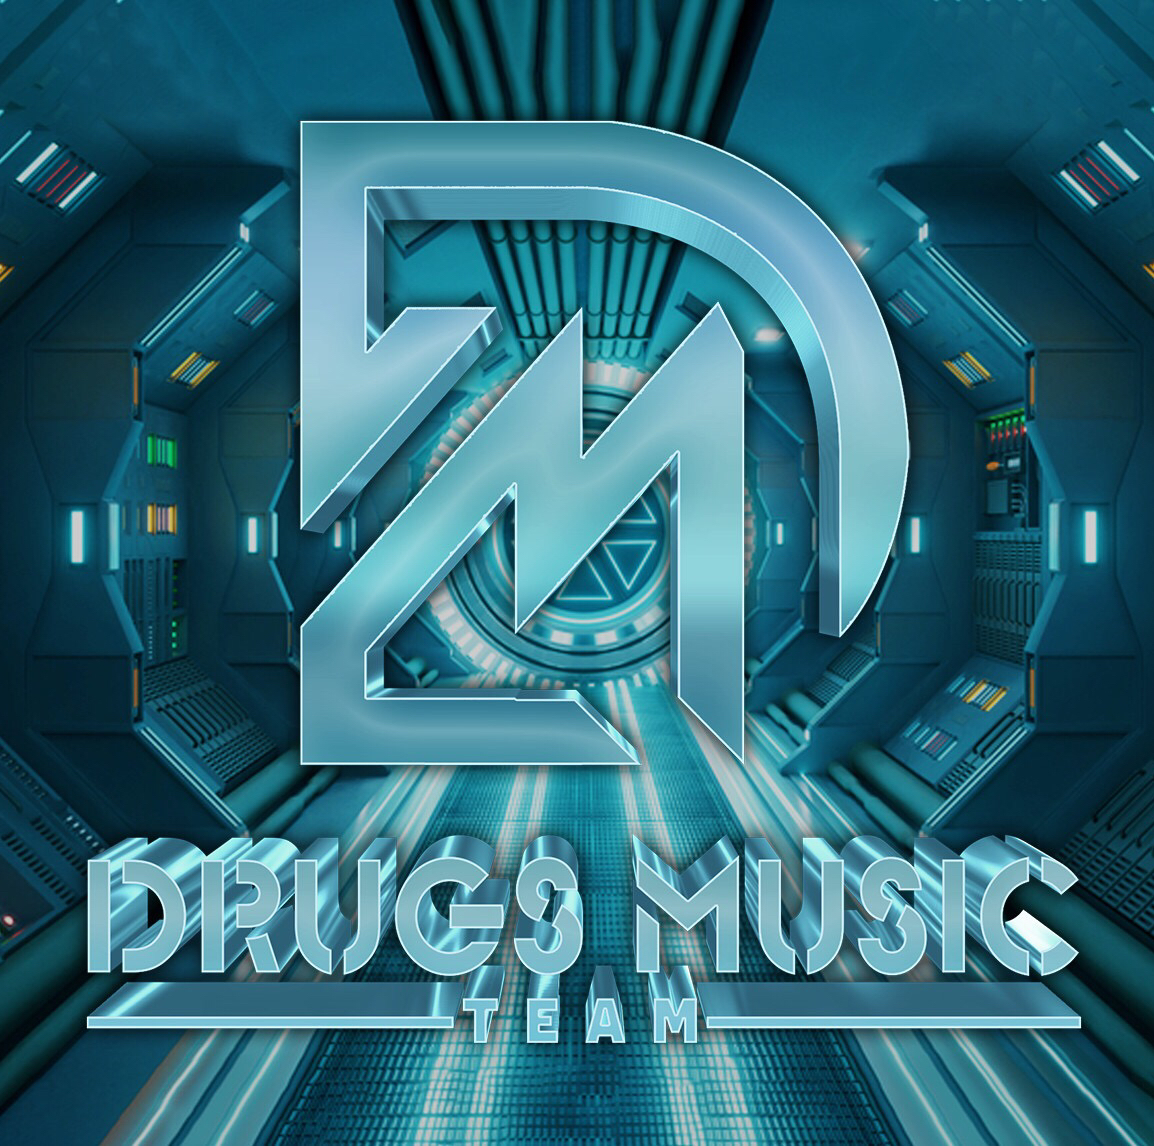 Hent Bên Trên Tầng Lầu - Tài Dola x Tbynz (Drugs Music Team)